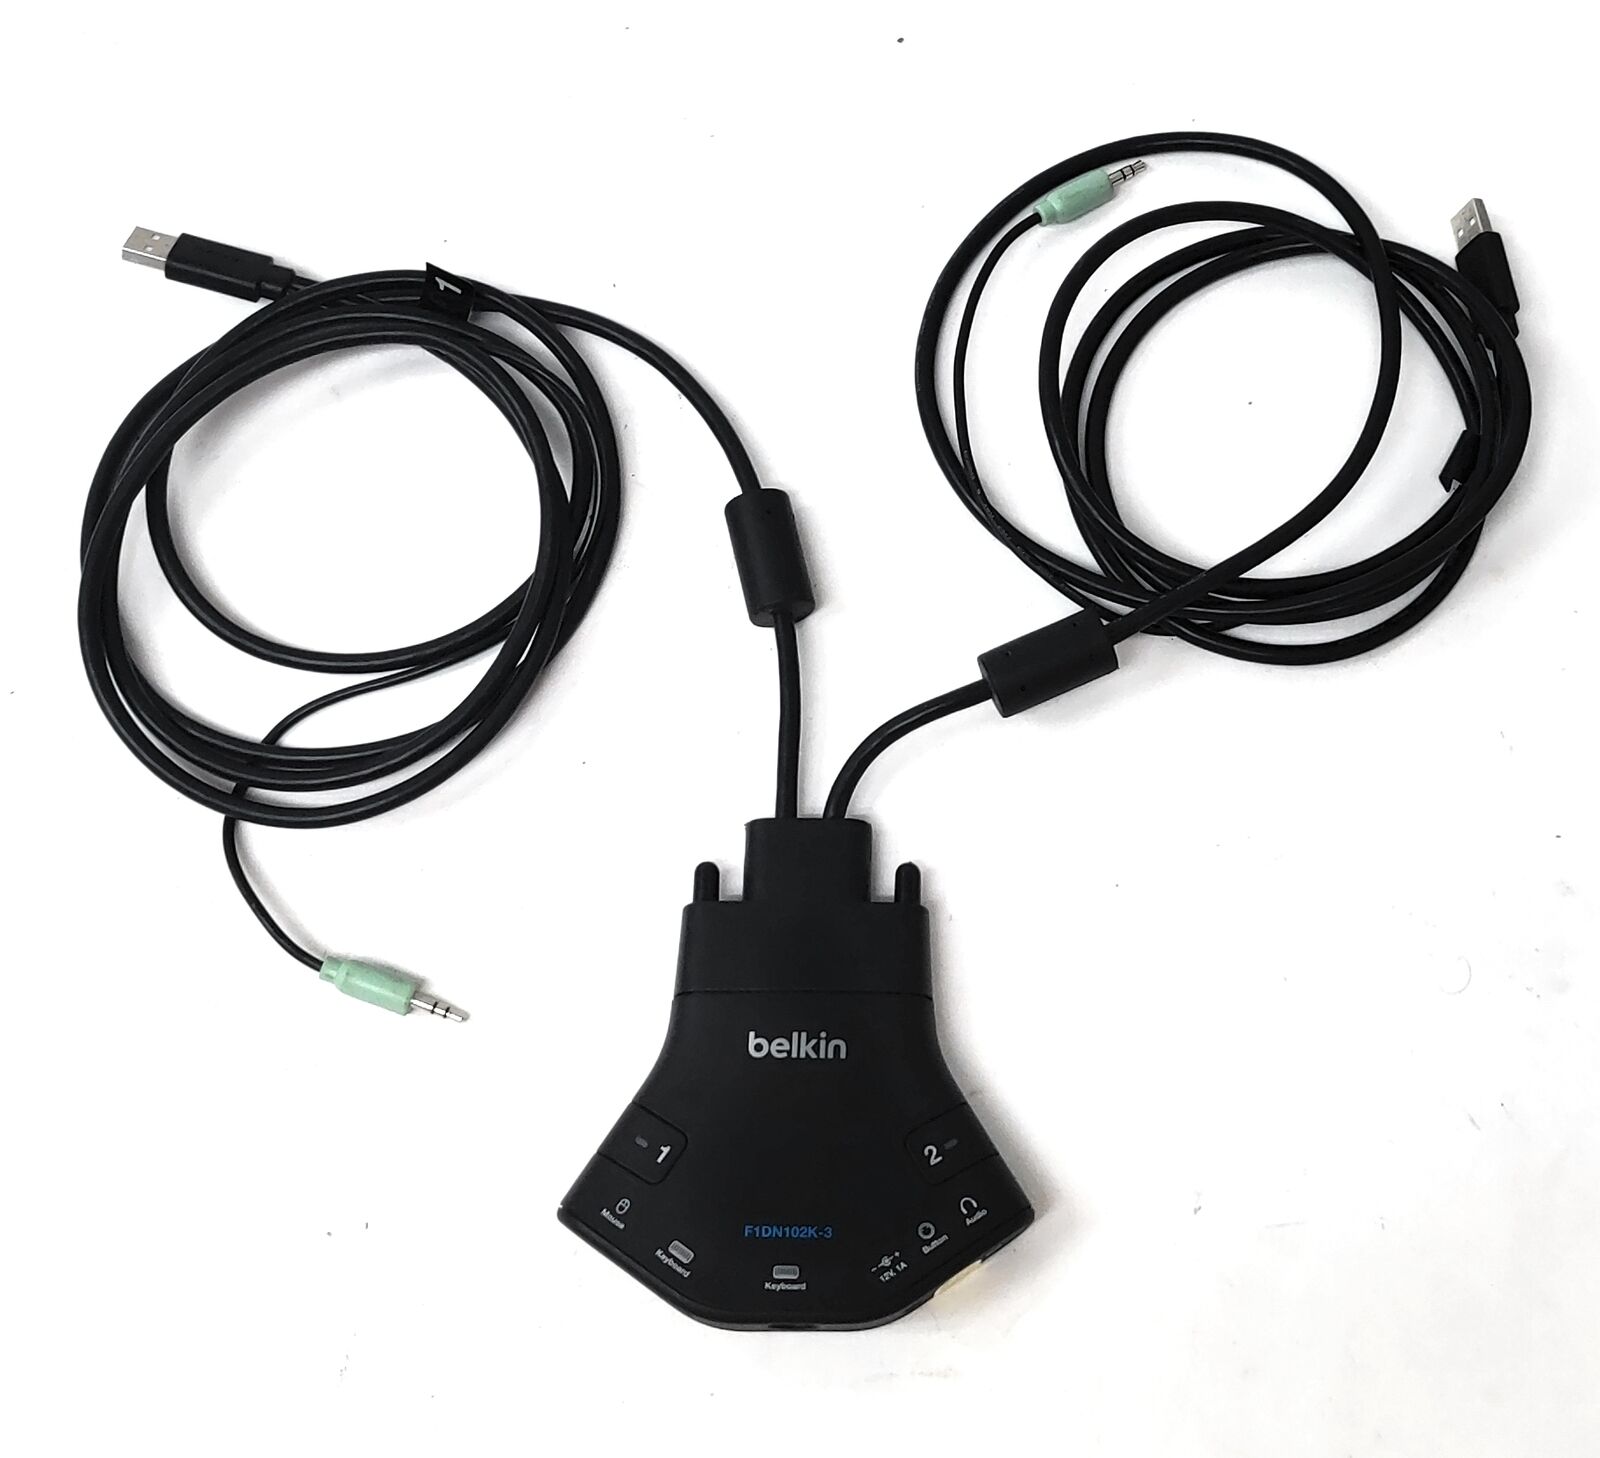 Belkin Secure Flip 2-Port Keyboard / Mouse Switch F1DN102K-3 PS2/USB TESTED